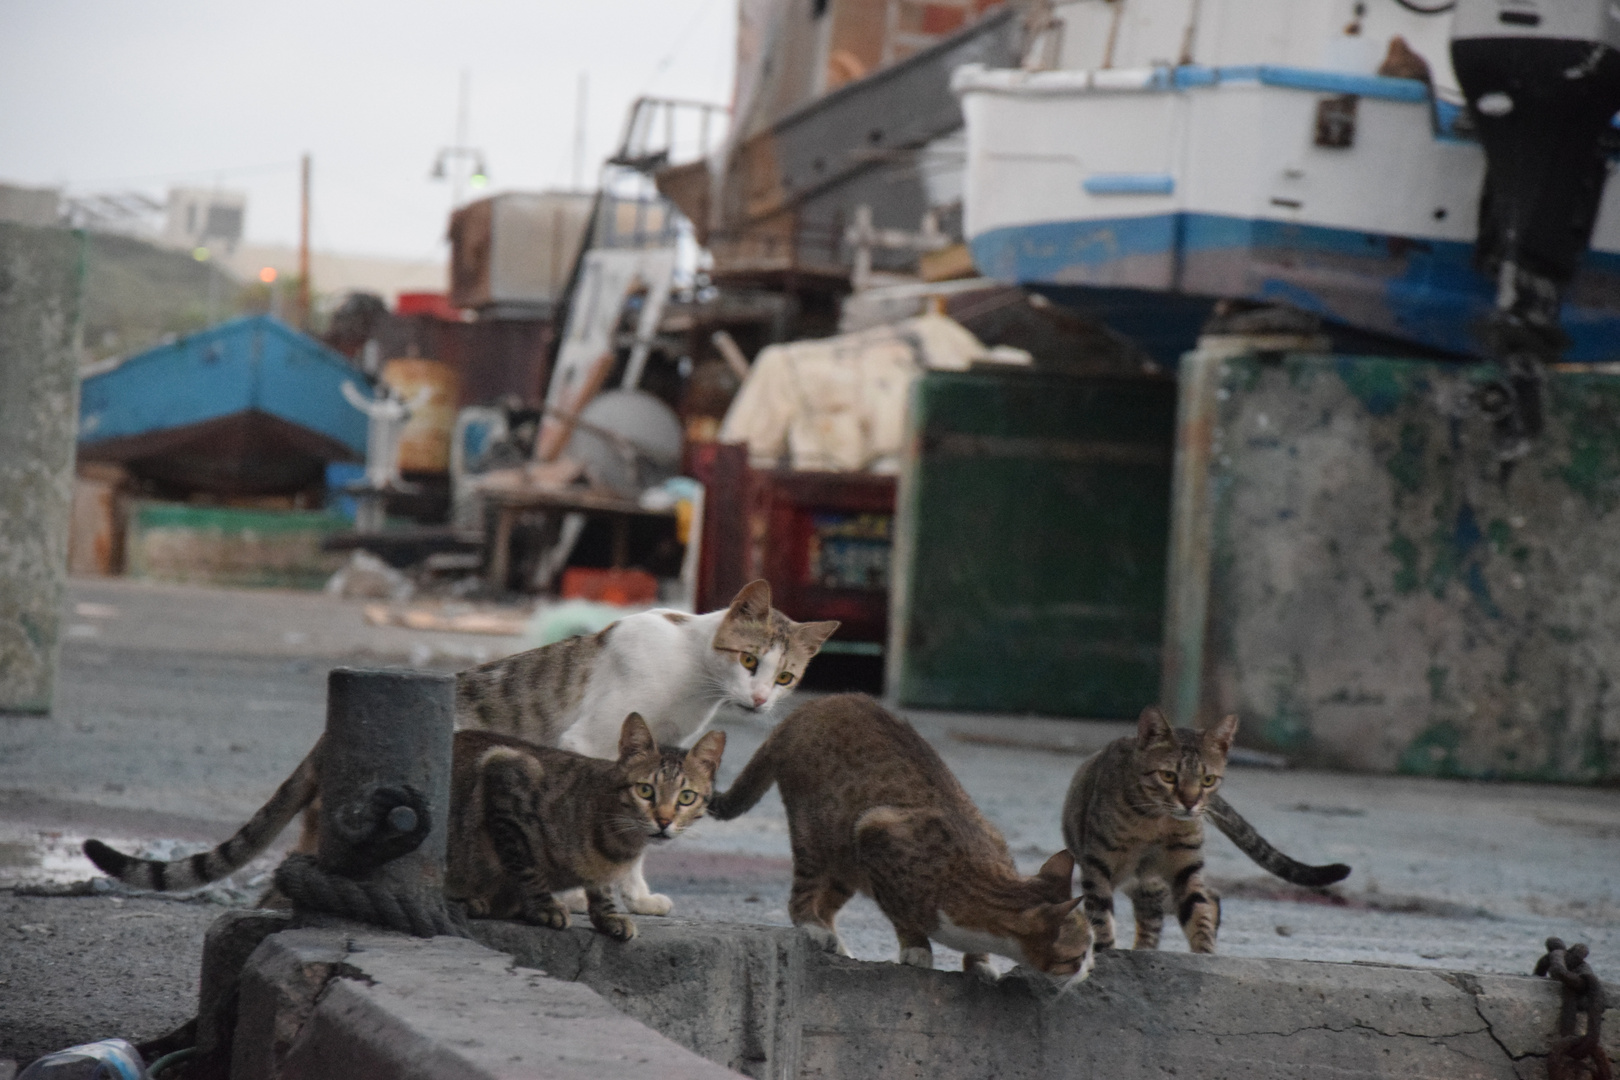 Katzen am Hafen